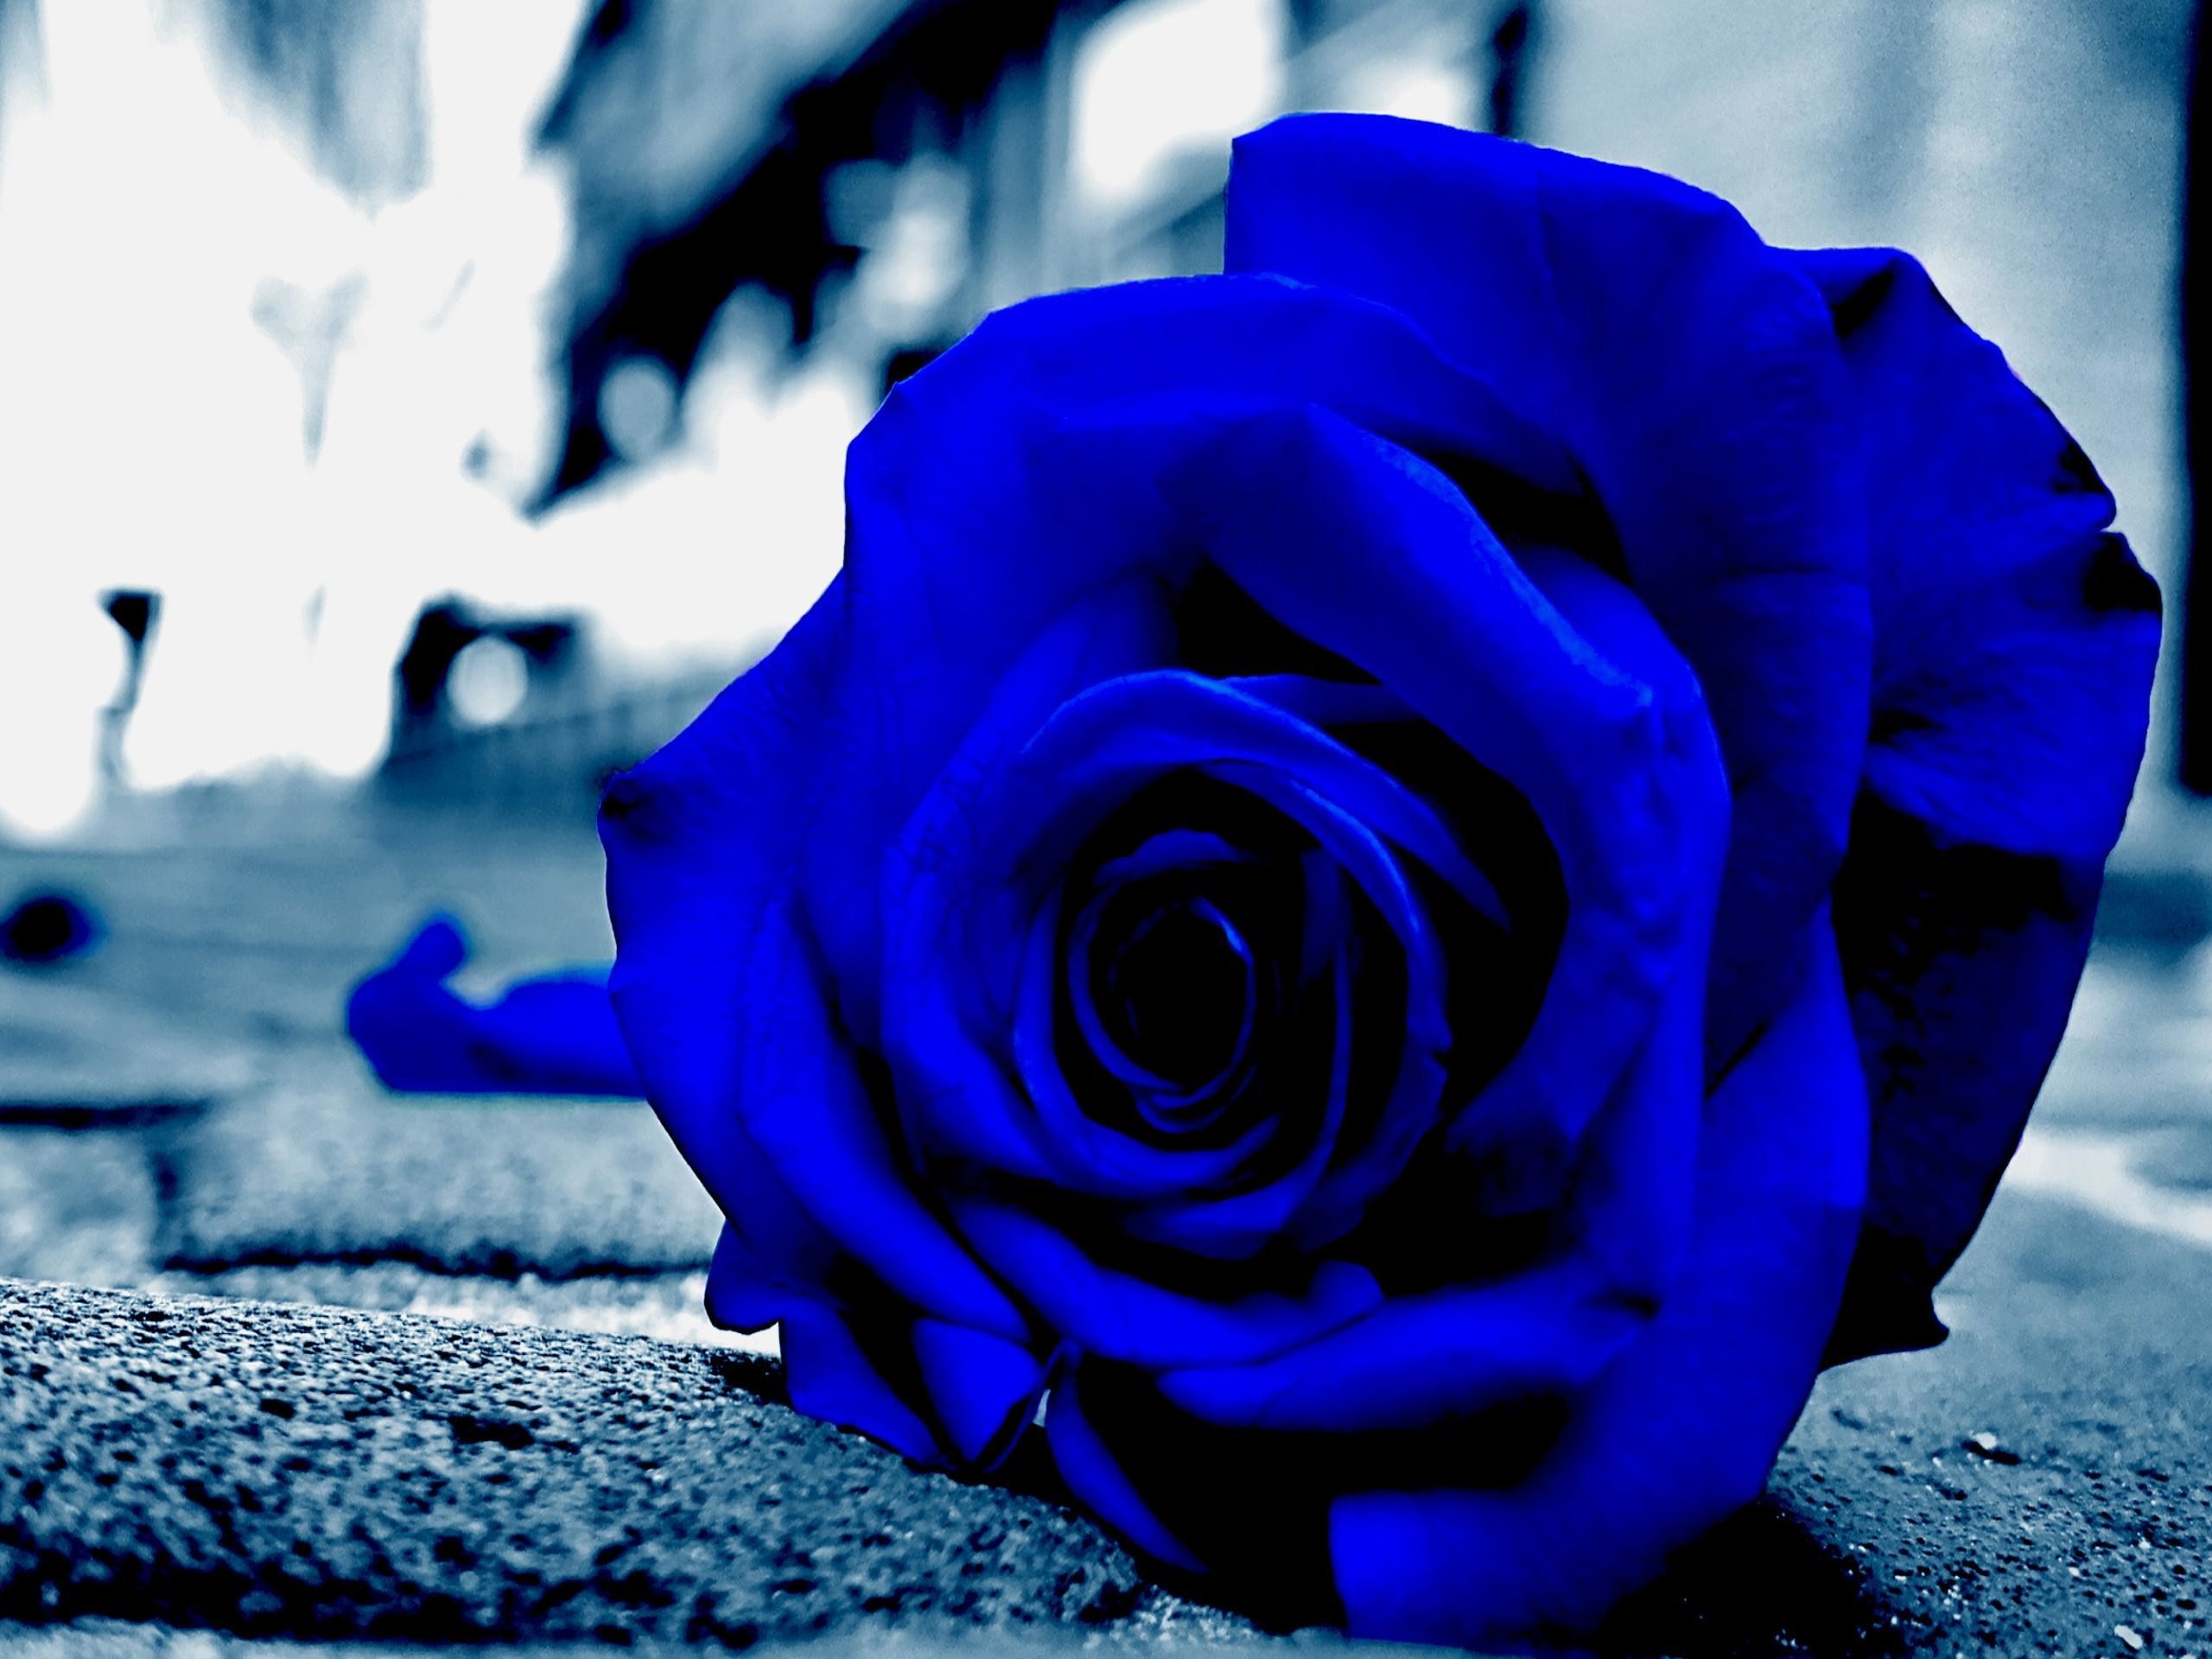 fond d'écran rose bleue,bleu,rose,fleur,rose bleue,pétale